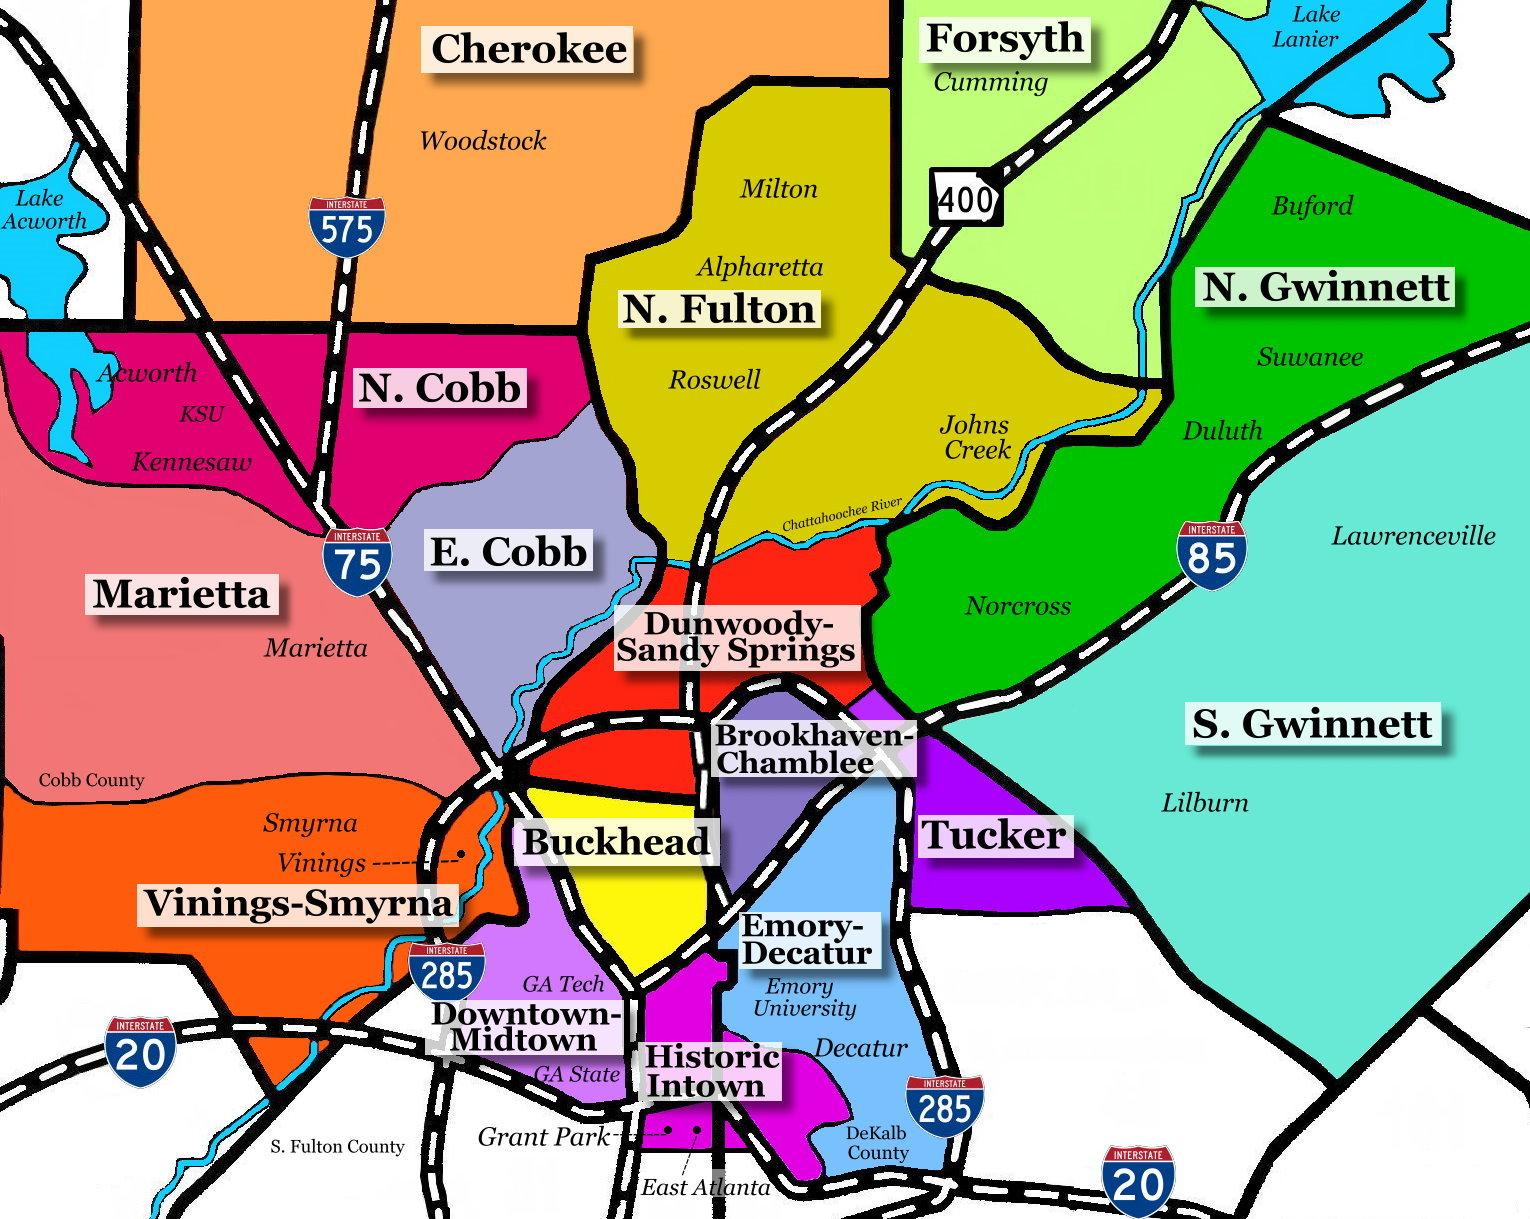 Map Of Cities Near Atlanta Ga 